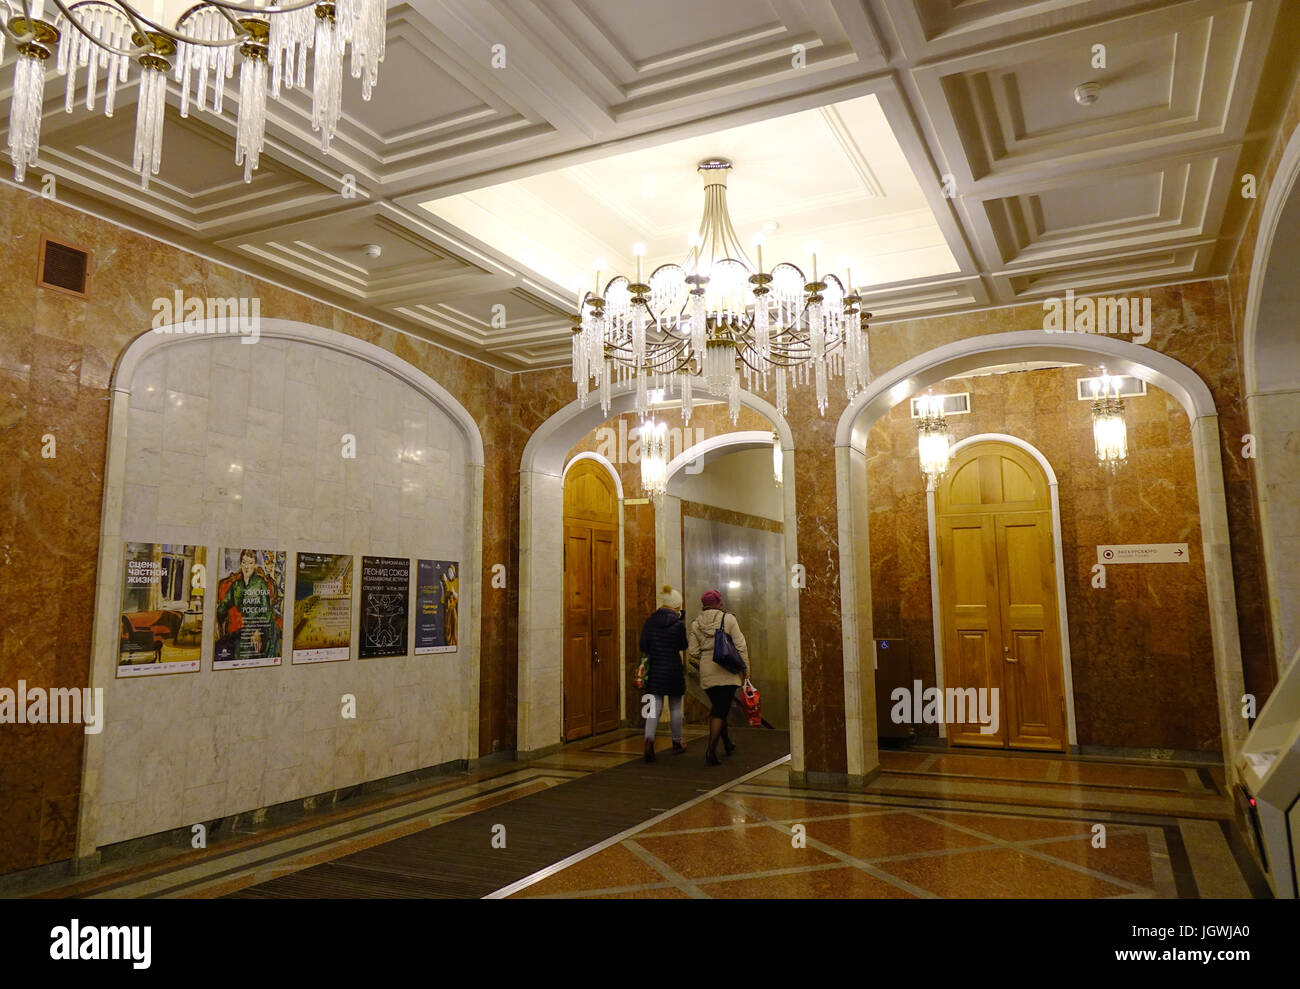 Mosca, Russia - Ott 20, 2016. All'interno del membro galleria Tretyakov di Mosca, Russia. La galleria è il luogo depositario di belle arti russa in Foto Stock